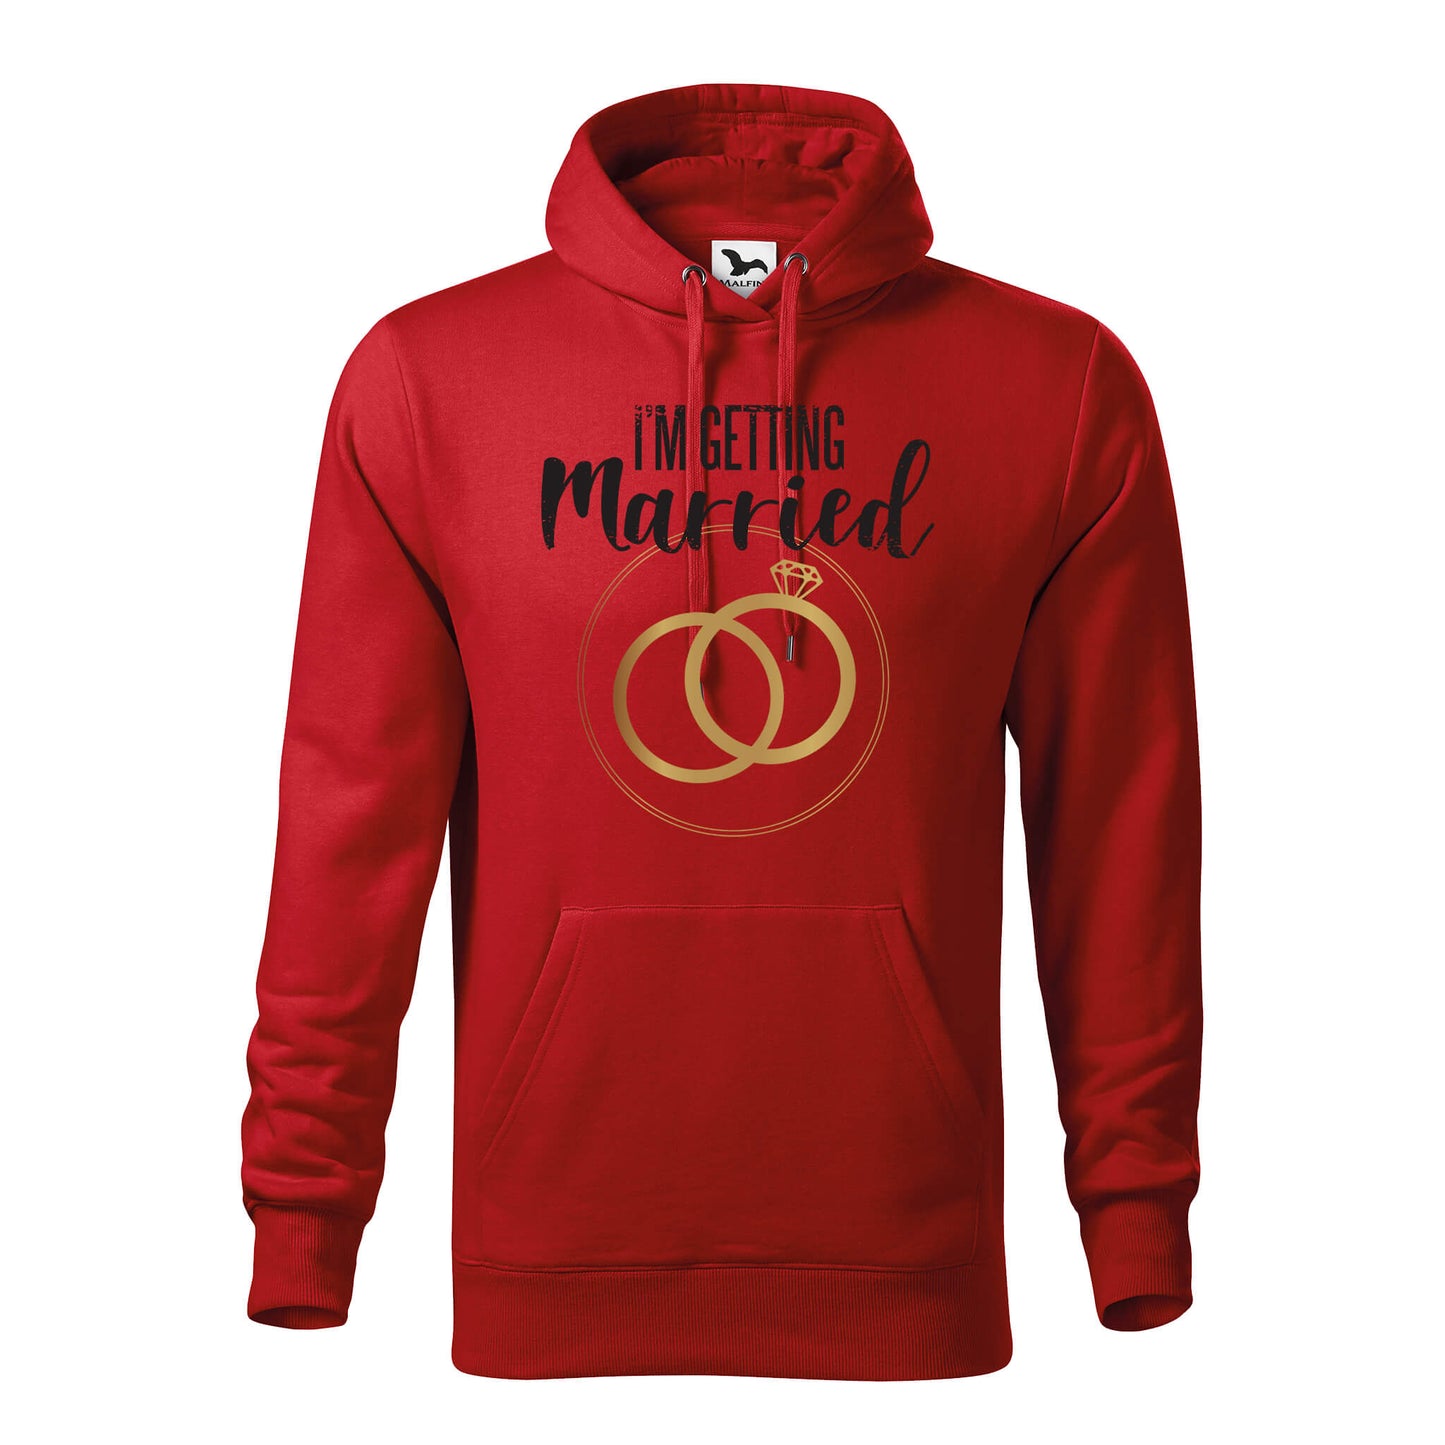 Im getting married hoodie - rvdesignprint